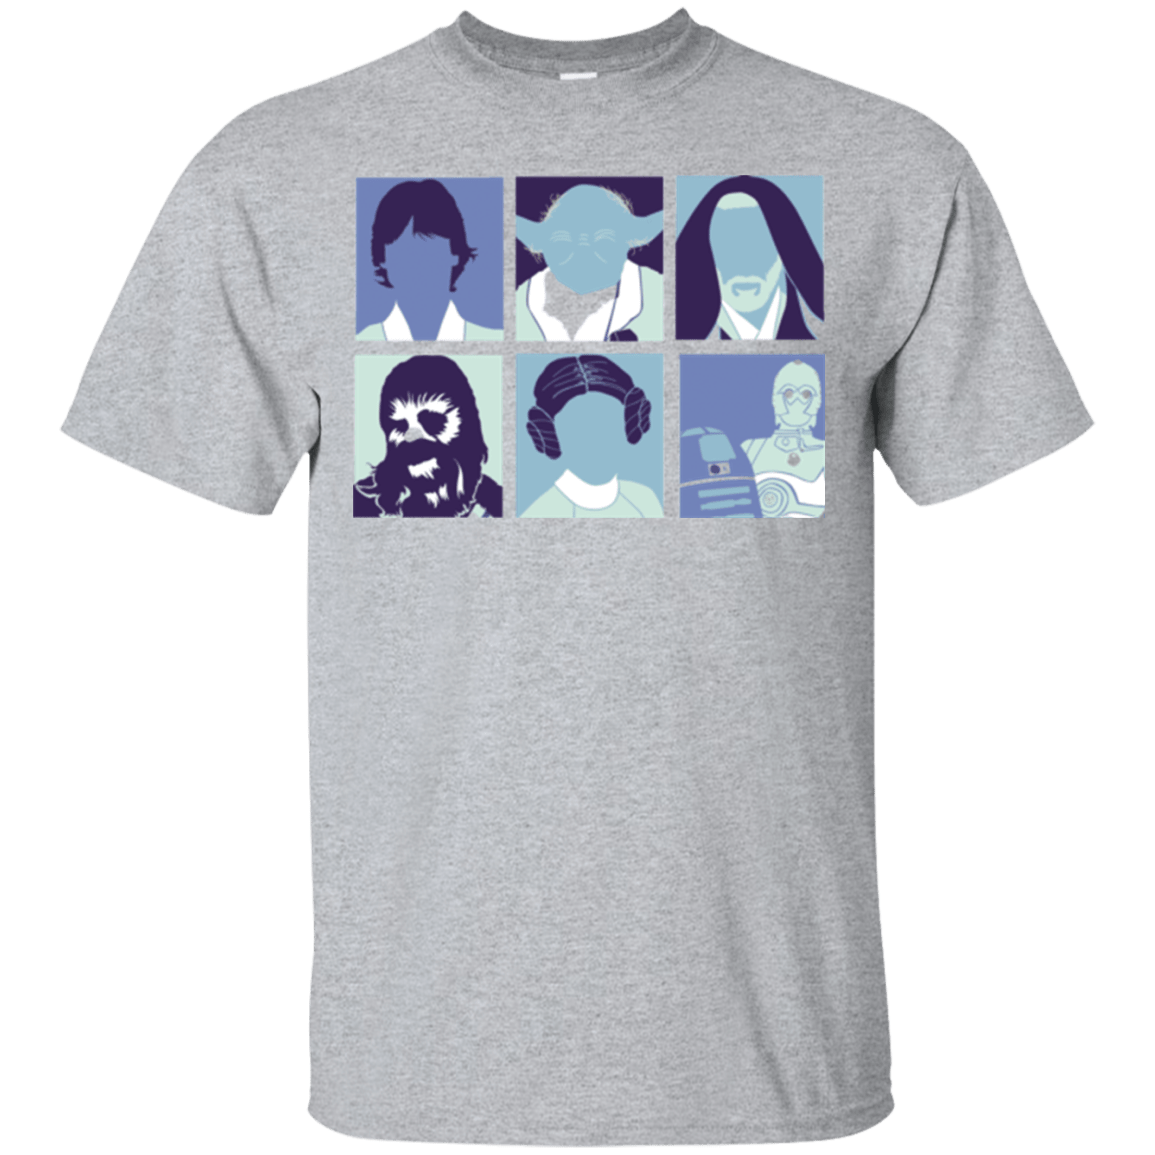 T-Shirts Sport Grey / Small Wars pop T-Shirt